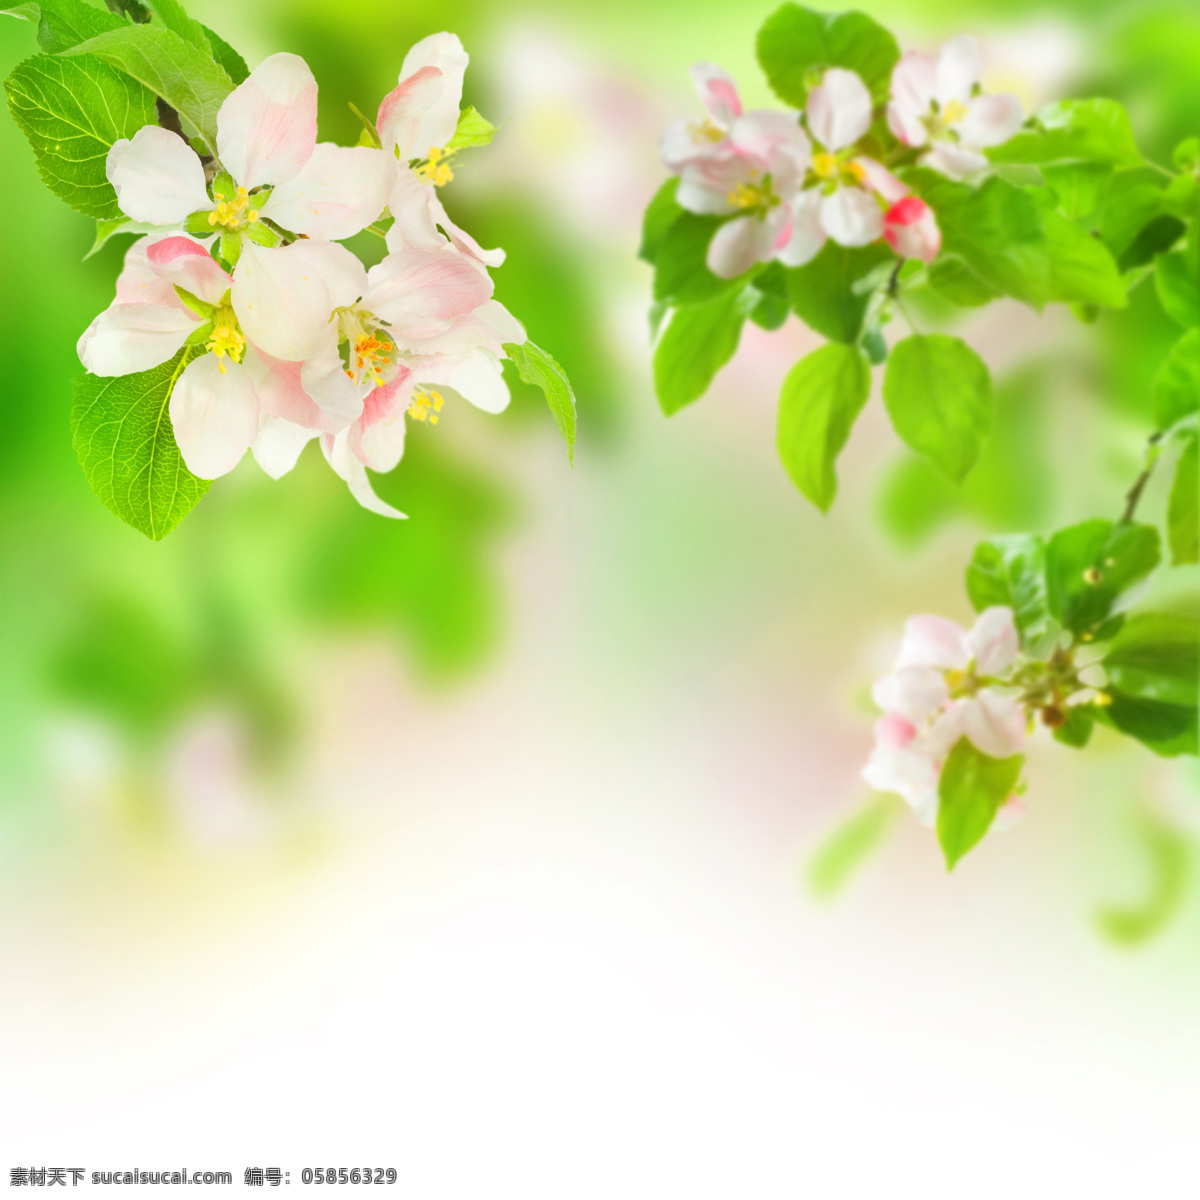 美丽 鲜花 背景 春天 春季 鲜花背景 花朵 花卉 梦幻背景 绿色清新 花草树木 生物世界